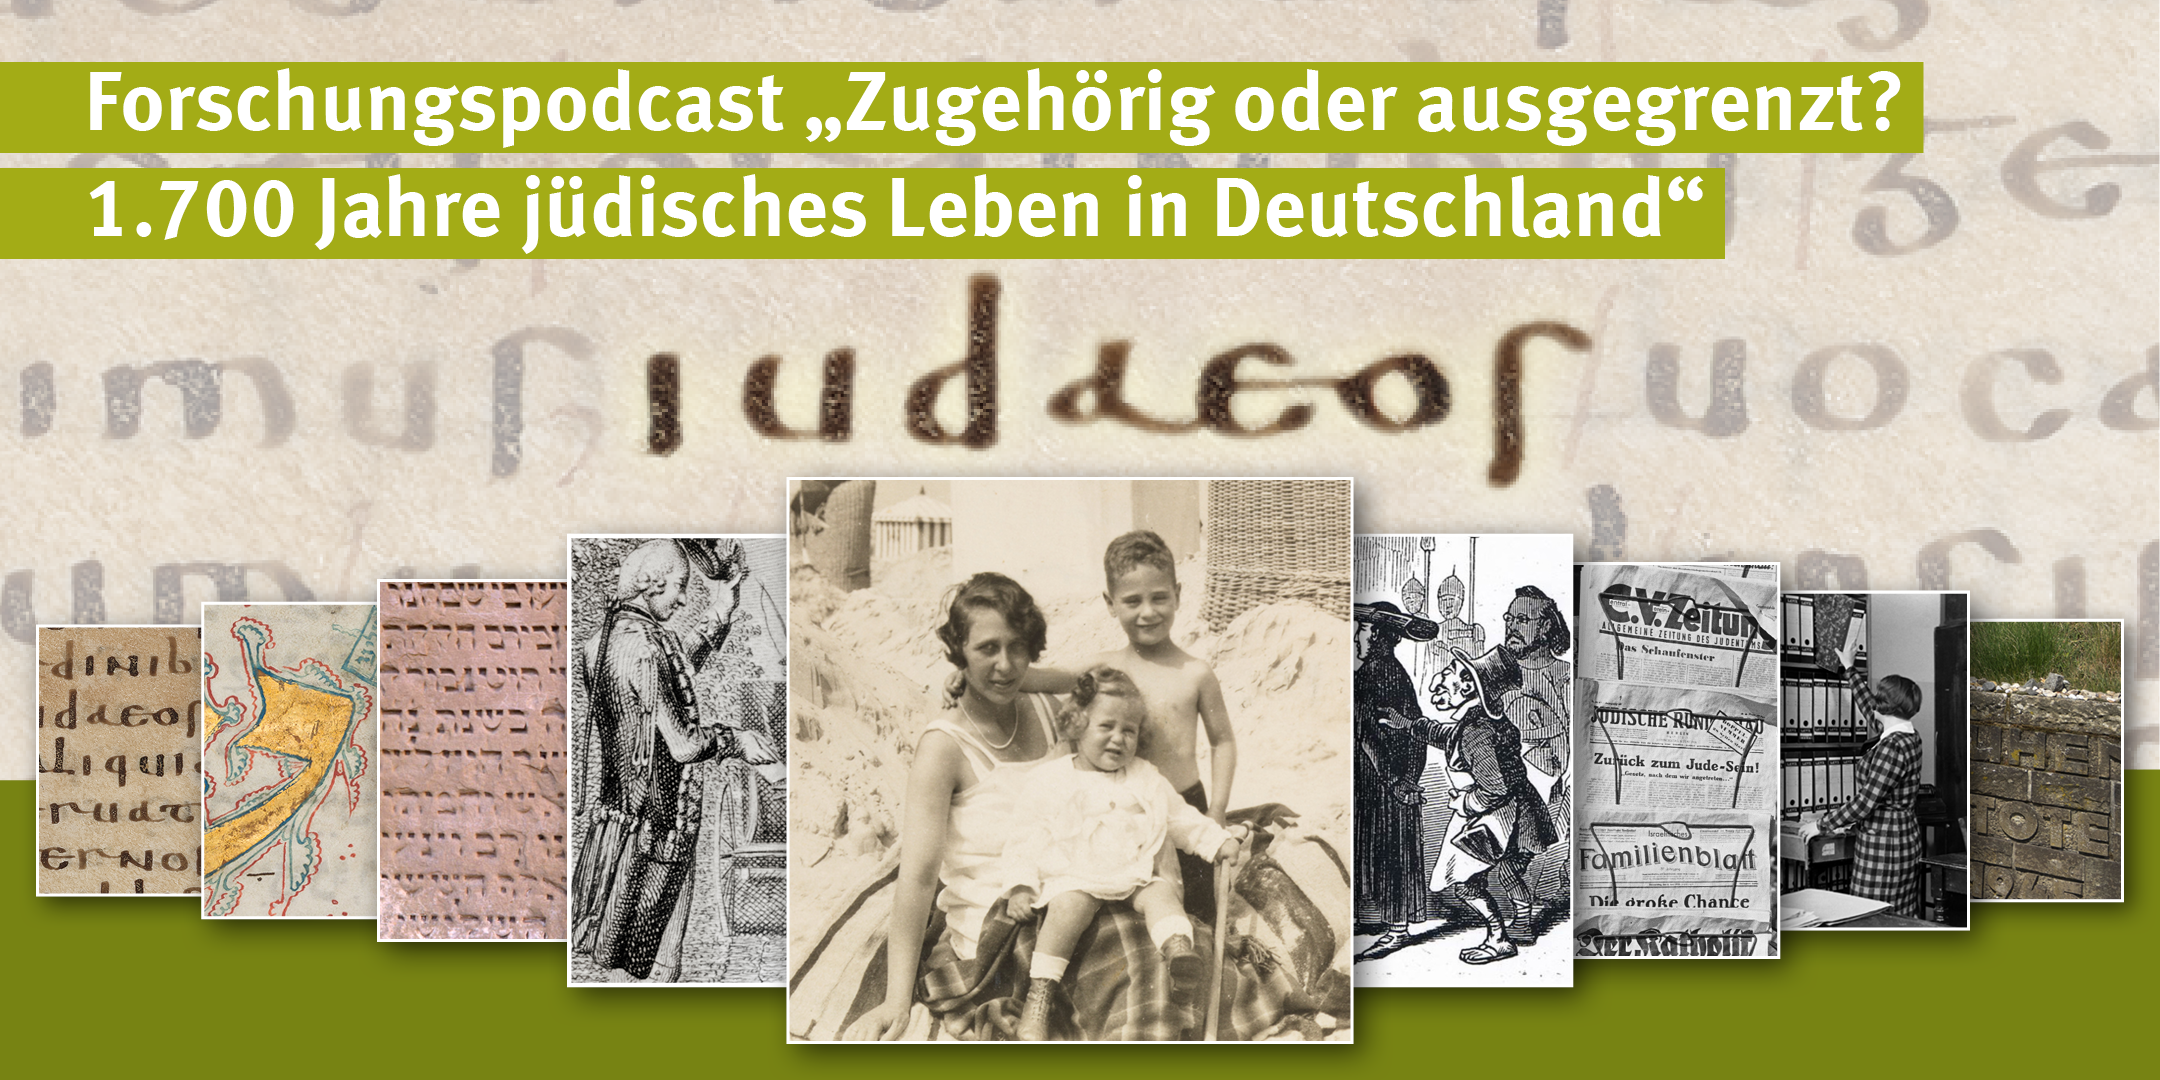 P-1-2-2102-22 Podcast Sharepic Serie Juedischesleben 1x2 5